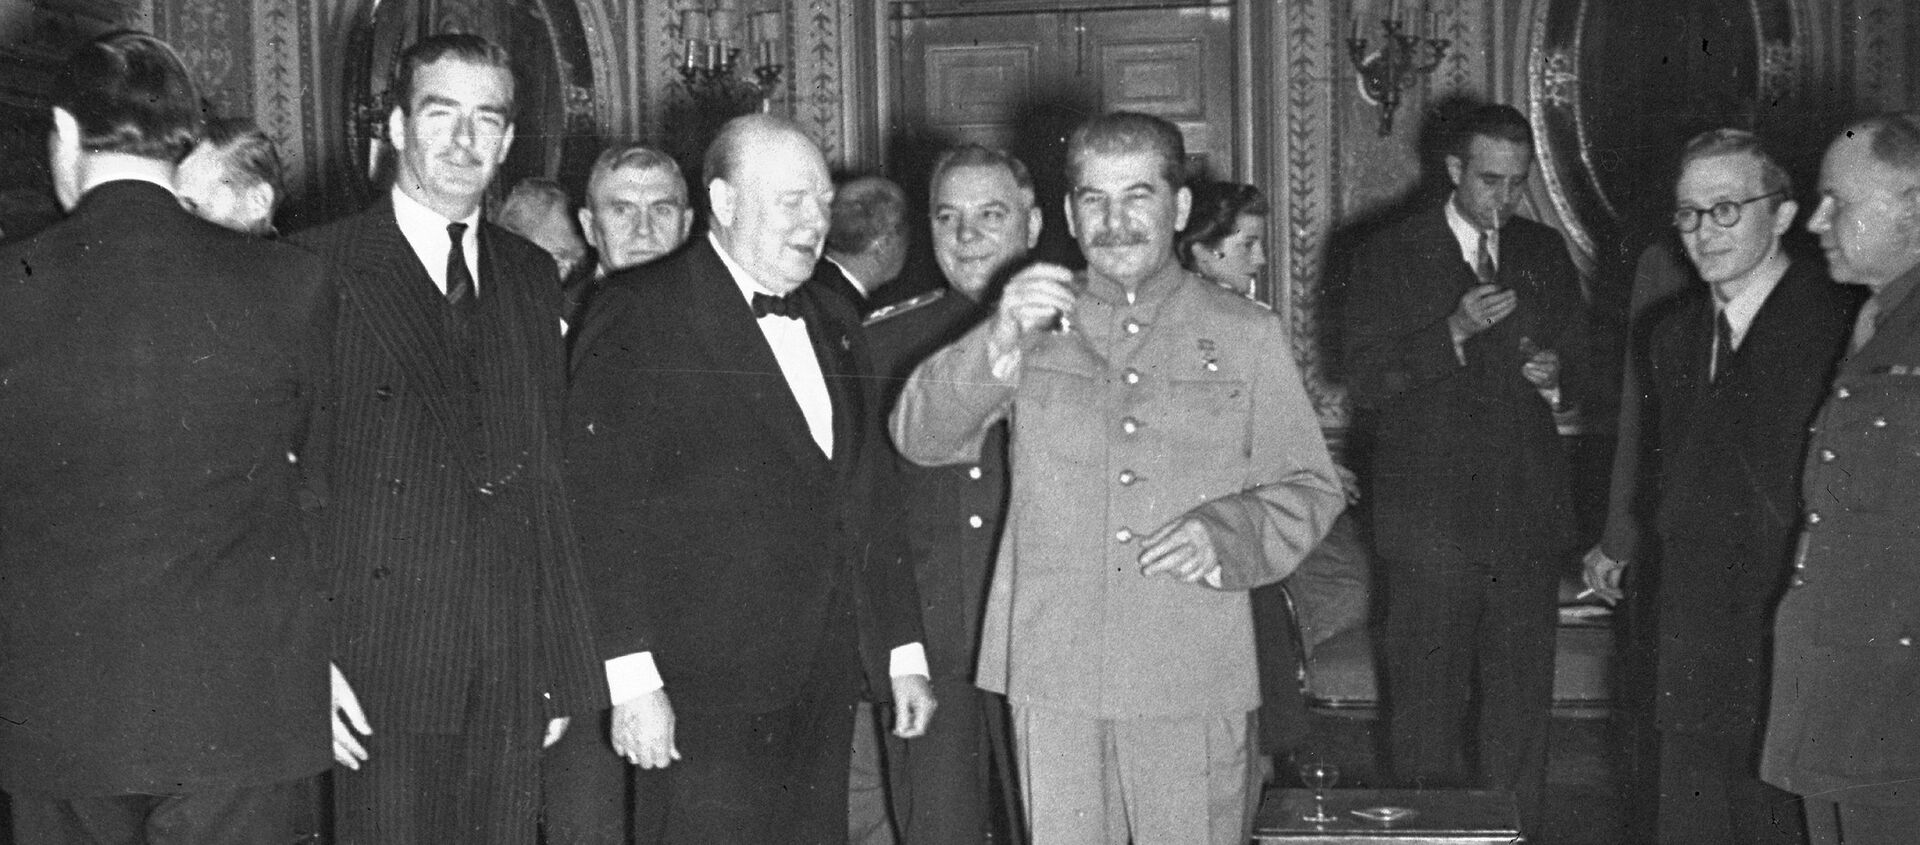 Лидер Советского Союза Иосиф Сталин поздравляет с днем рождения премьер-министра Великобритании Уинстона Черчилля на Тегеранской конференции, 1943 год - Sputnik Узбекистан, 1920, 08.03.2021